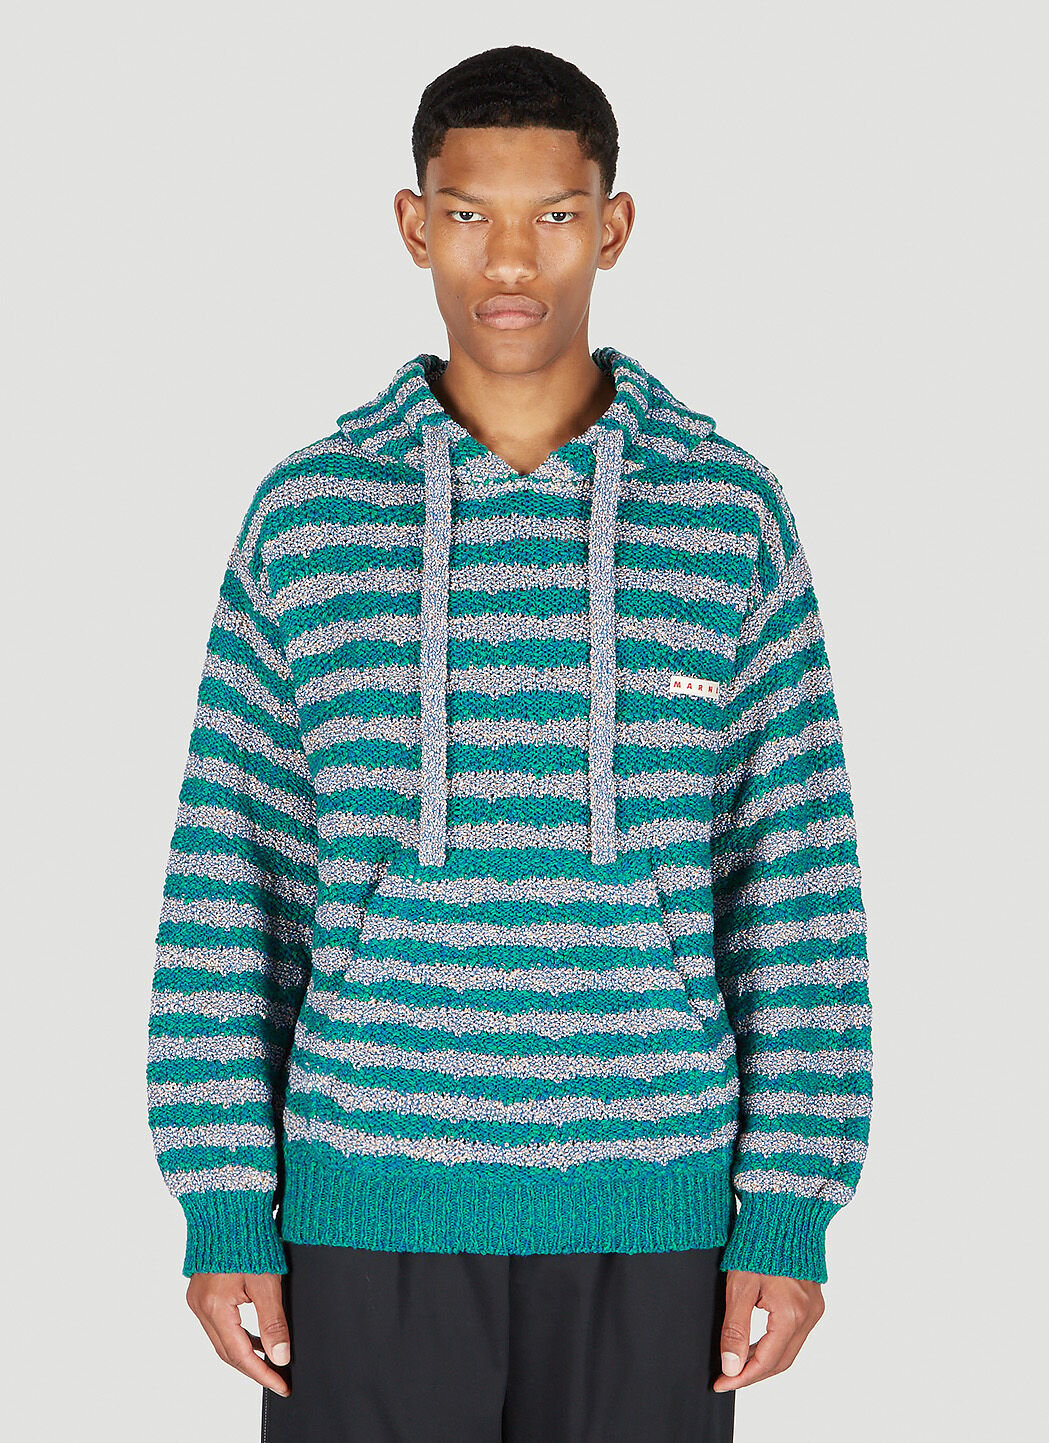 Marni 스트라이프 후드 스웨터 네이비 mni0151035